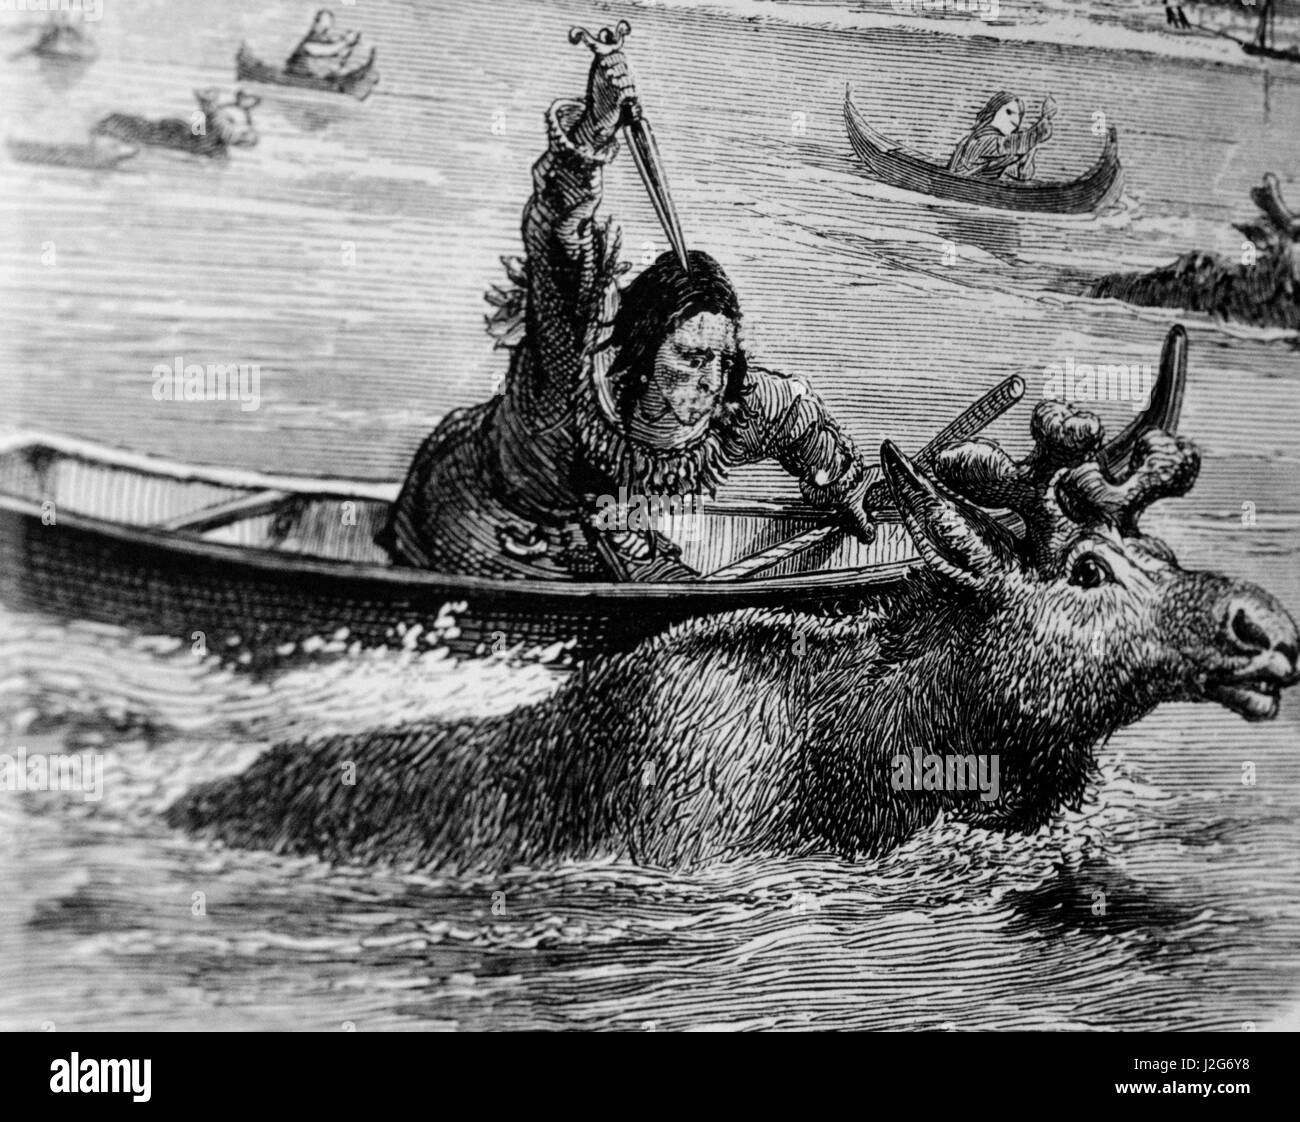 Mentre le alci attraversato acque, tribù native pala sarebbe una canoa fino abbastanza vicino per utilizzare una lancia o coltello Foto Stock